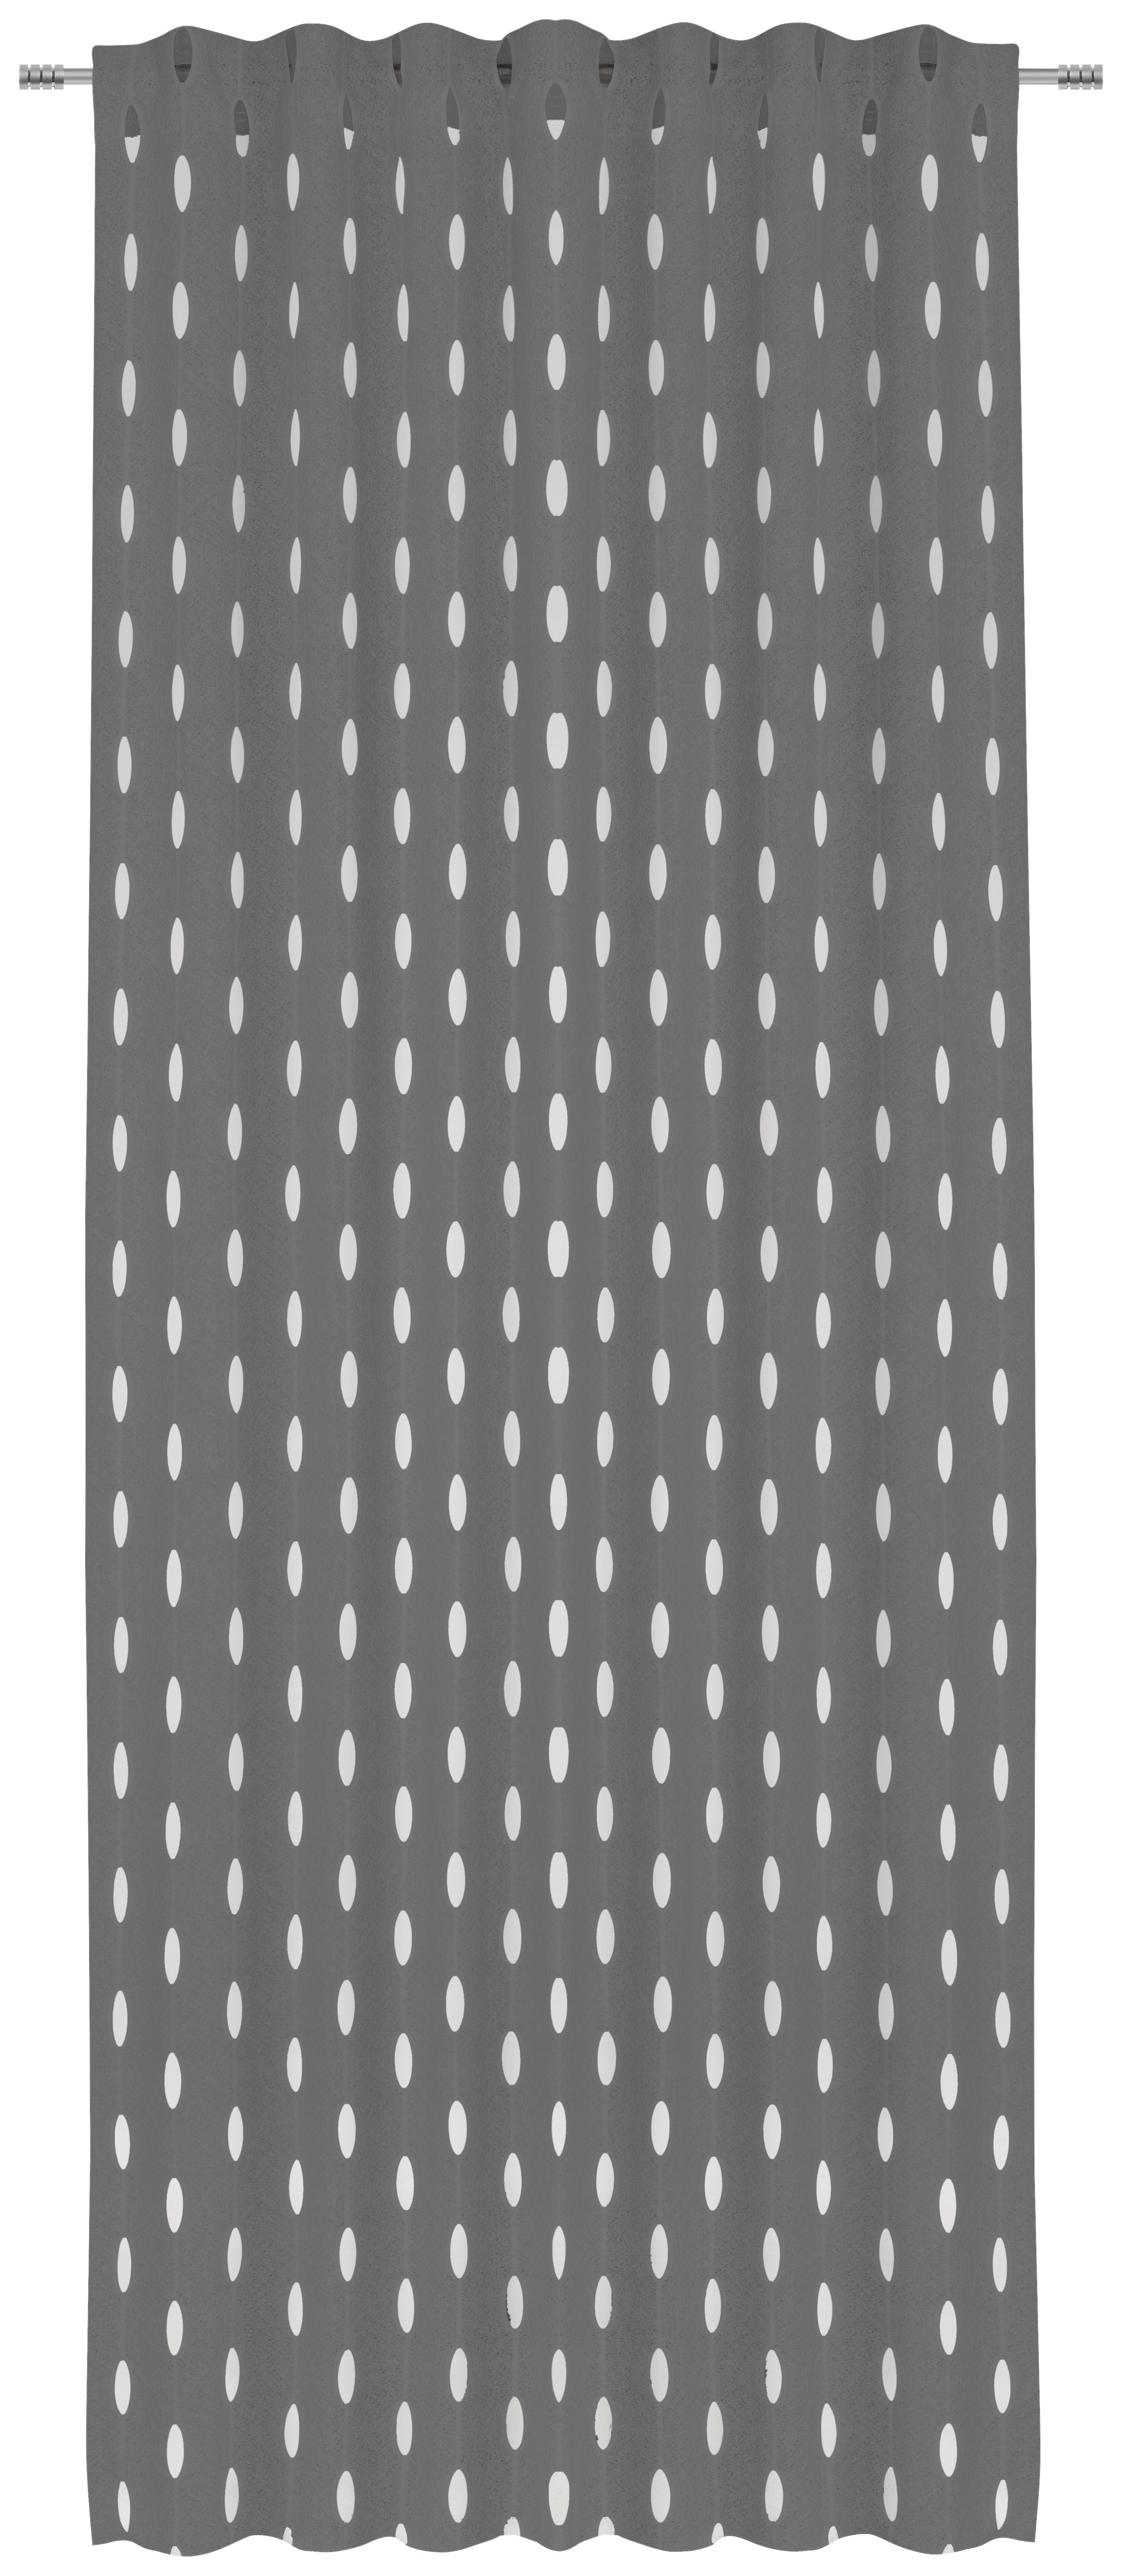 KÉSZFÜGGÖNY Részben áttetsző  - Antracit, Design, Textil (135/255cm) - Novel